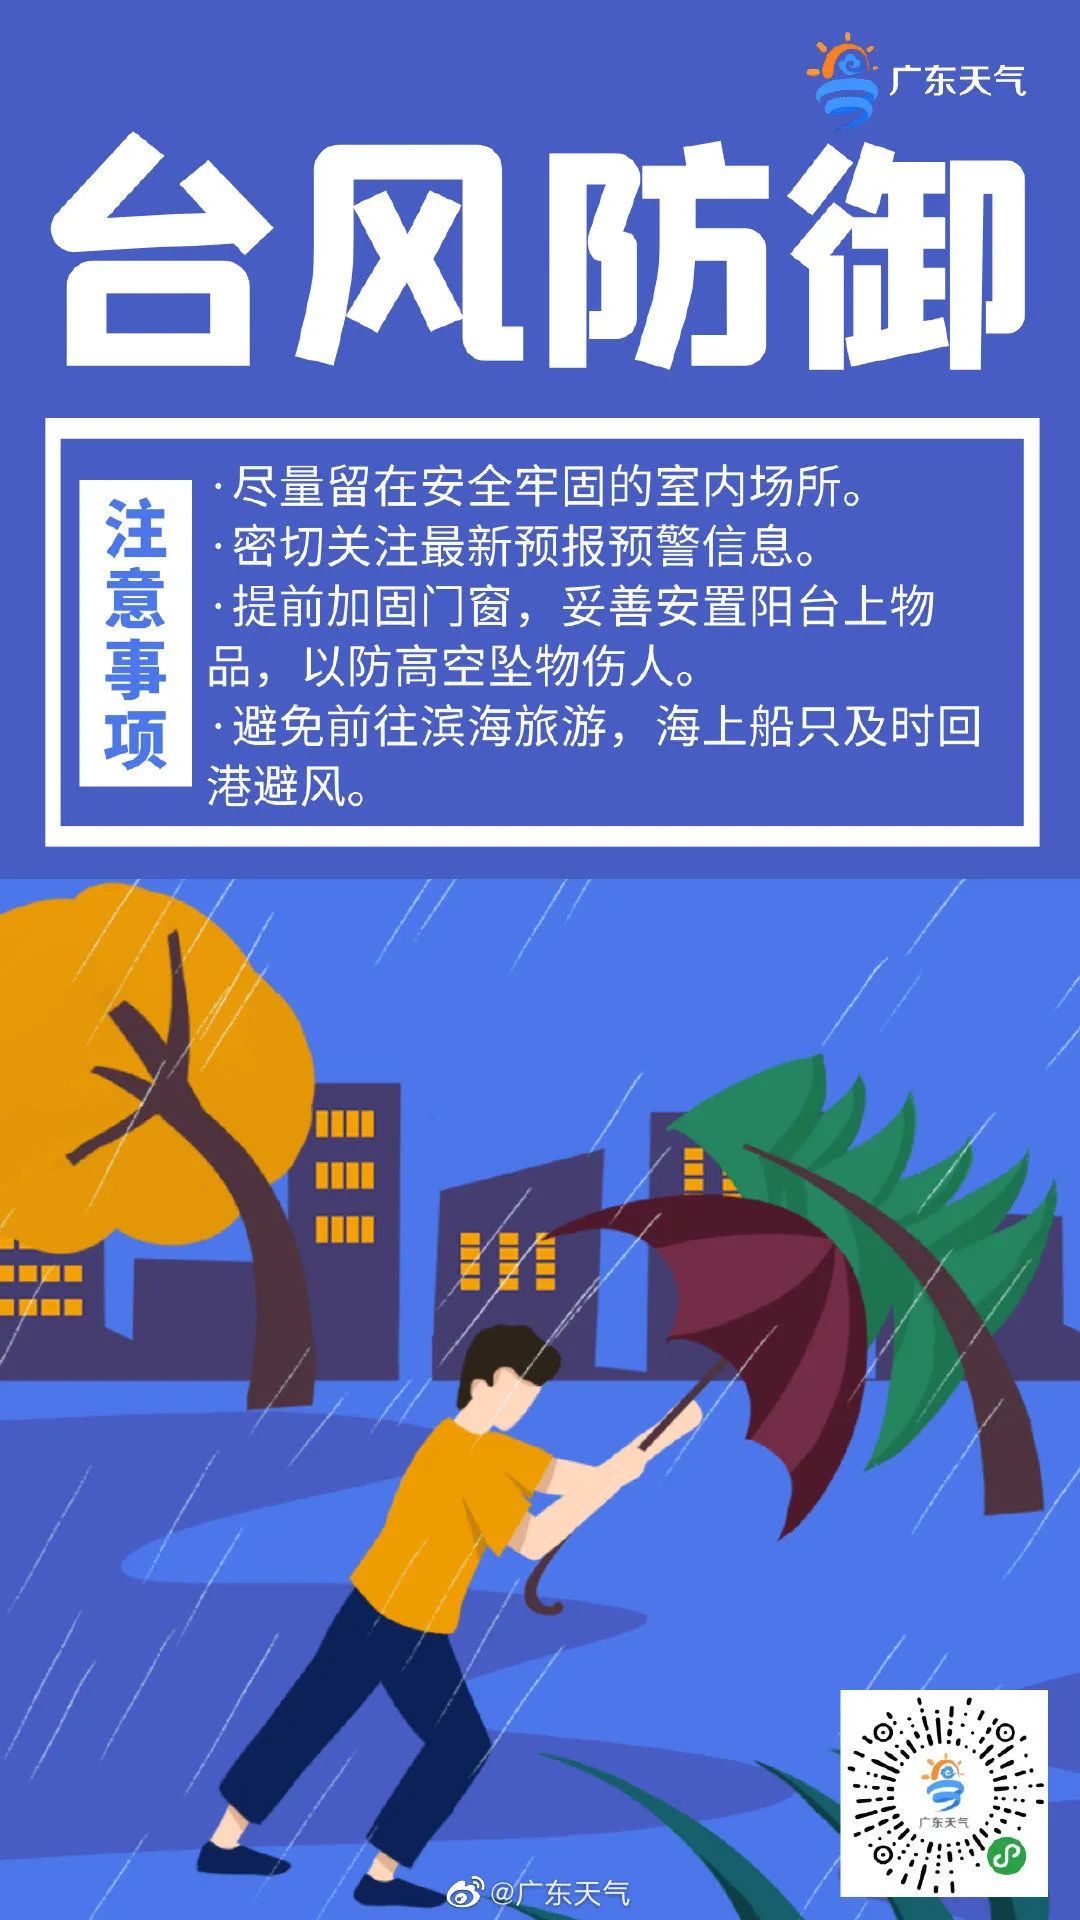 汕头台风蓝色预警信号升级为黄色_影响_海葵_暴雨